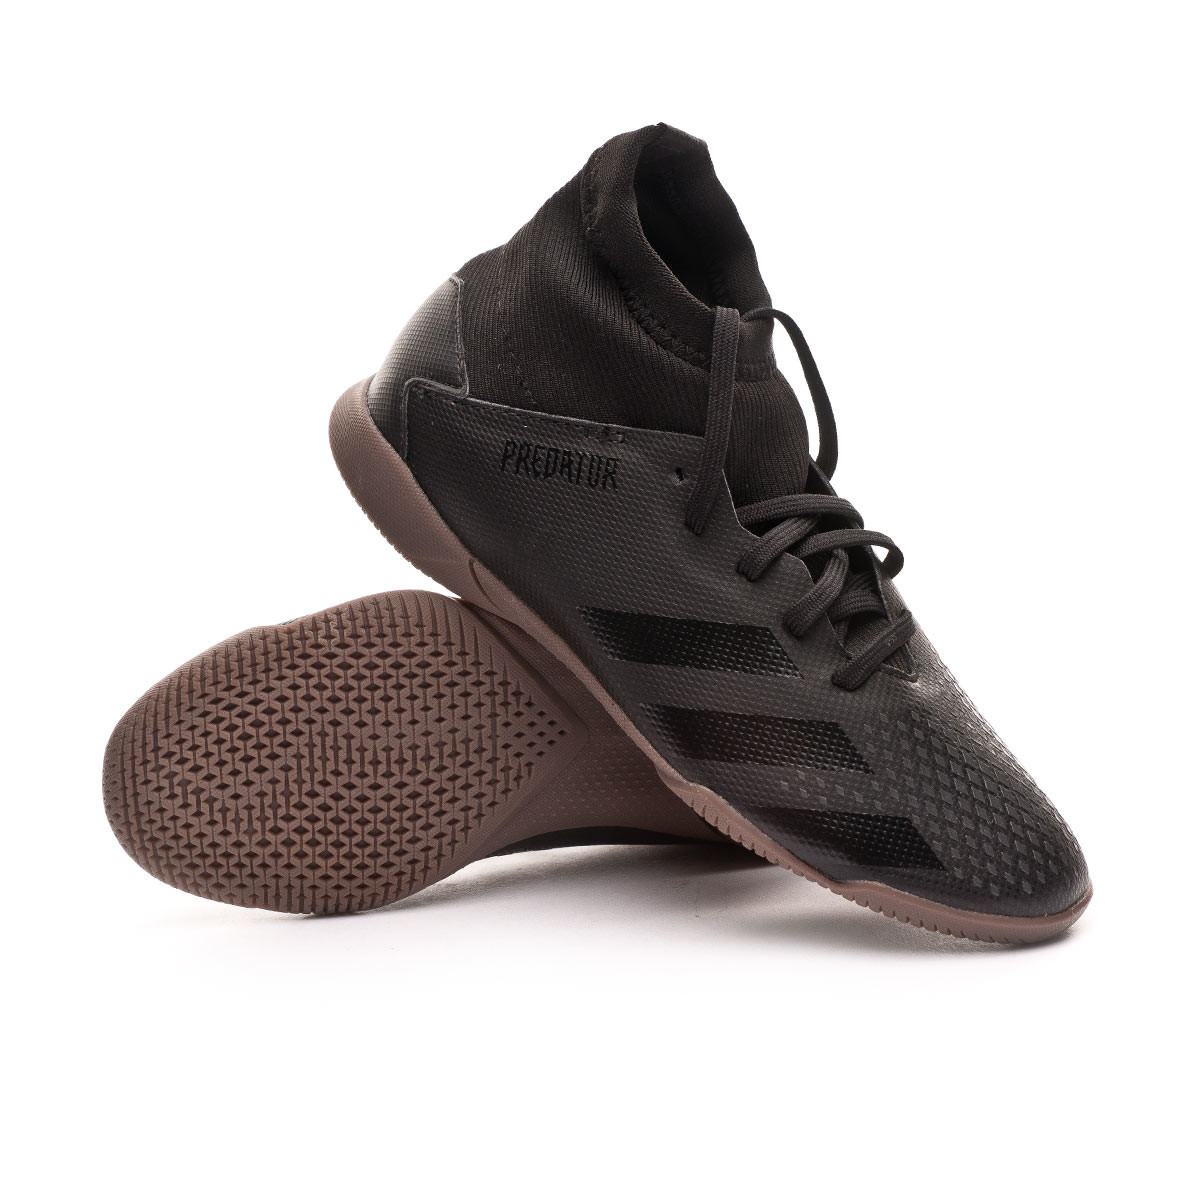 adidas predator futsal shoes